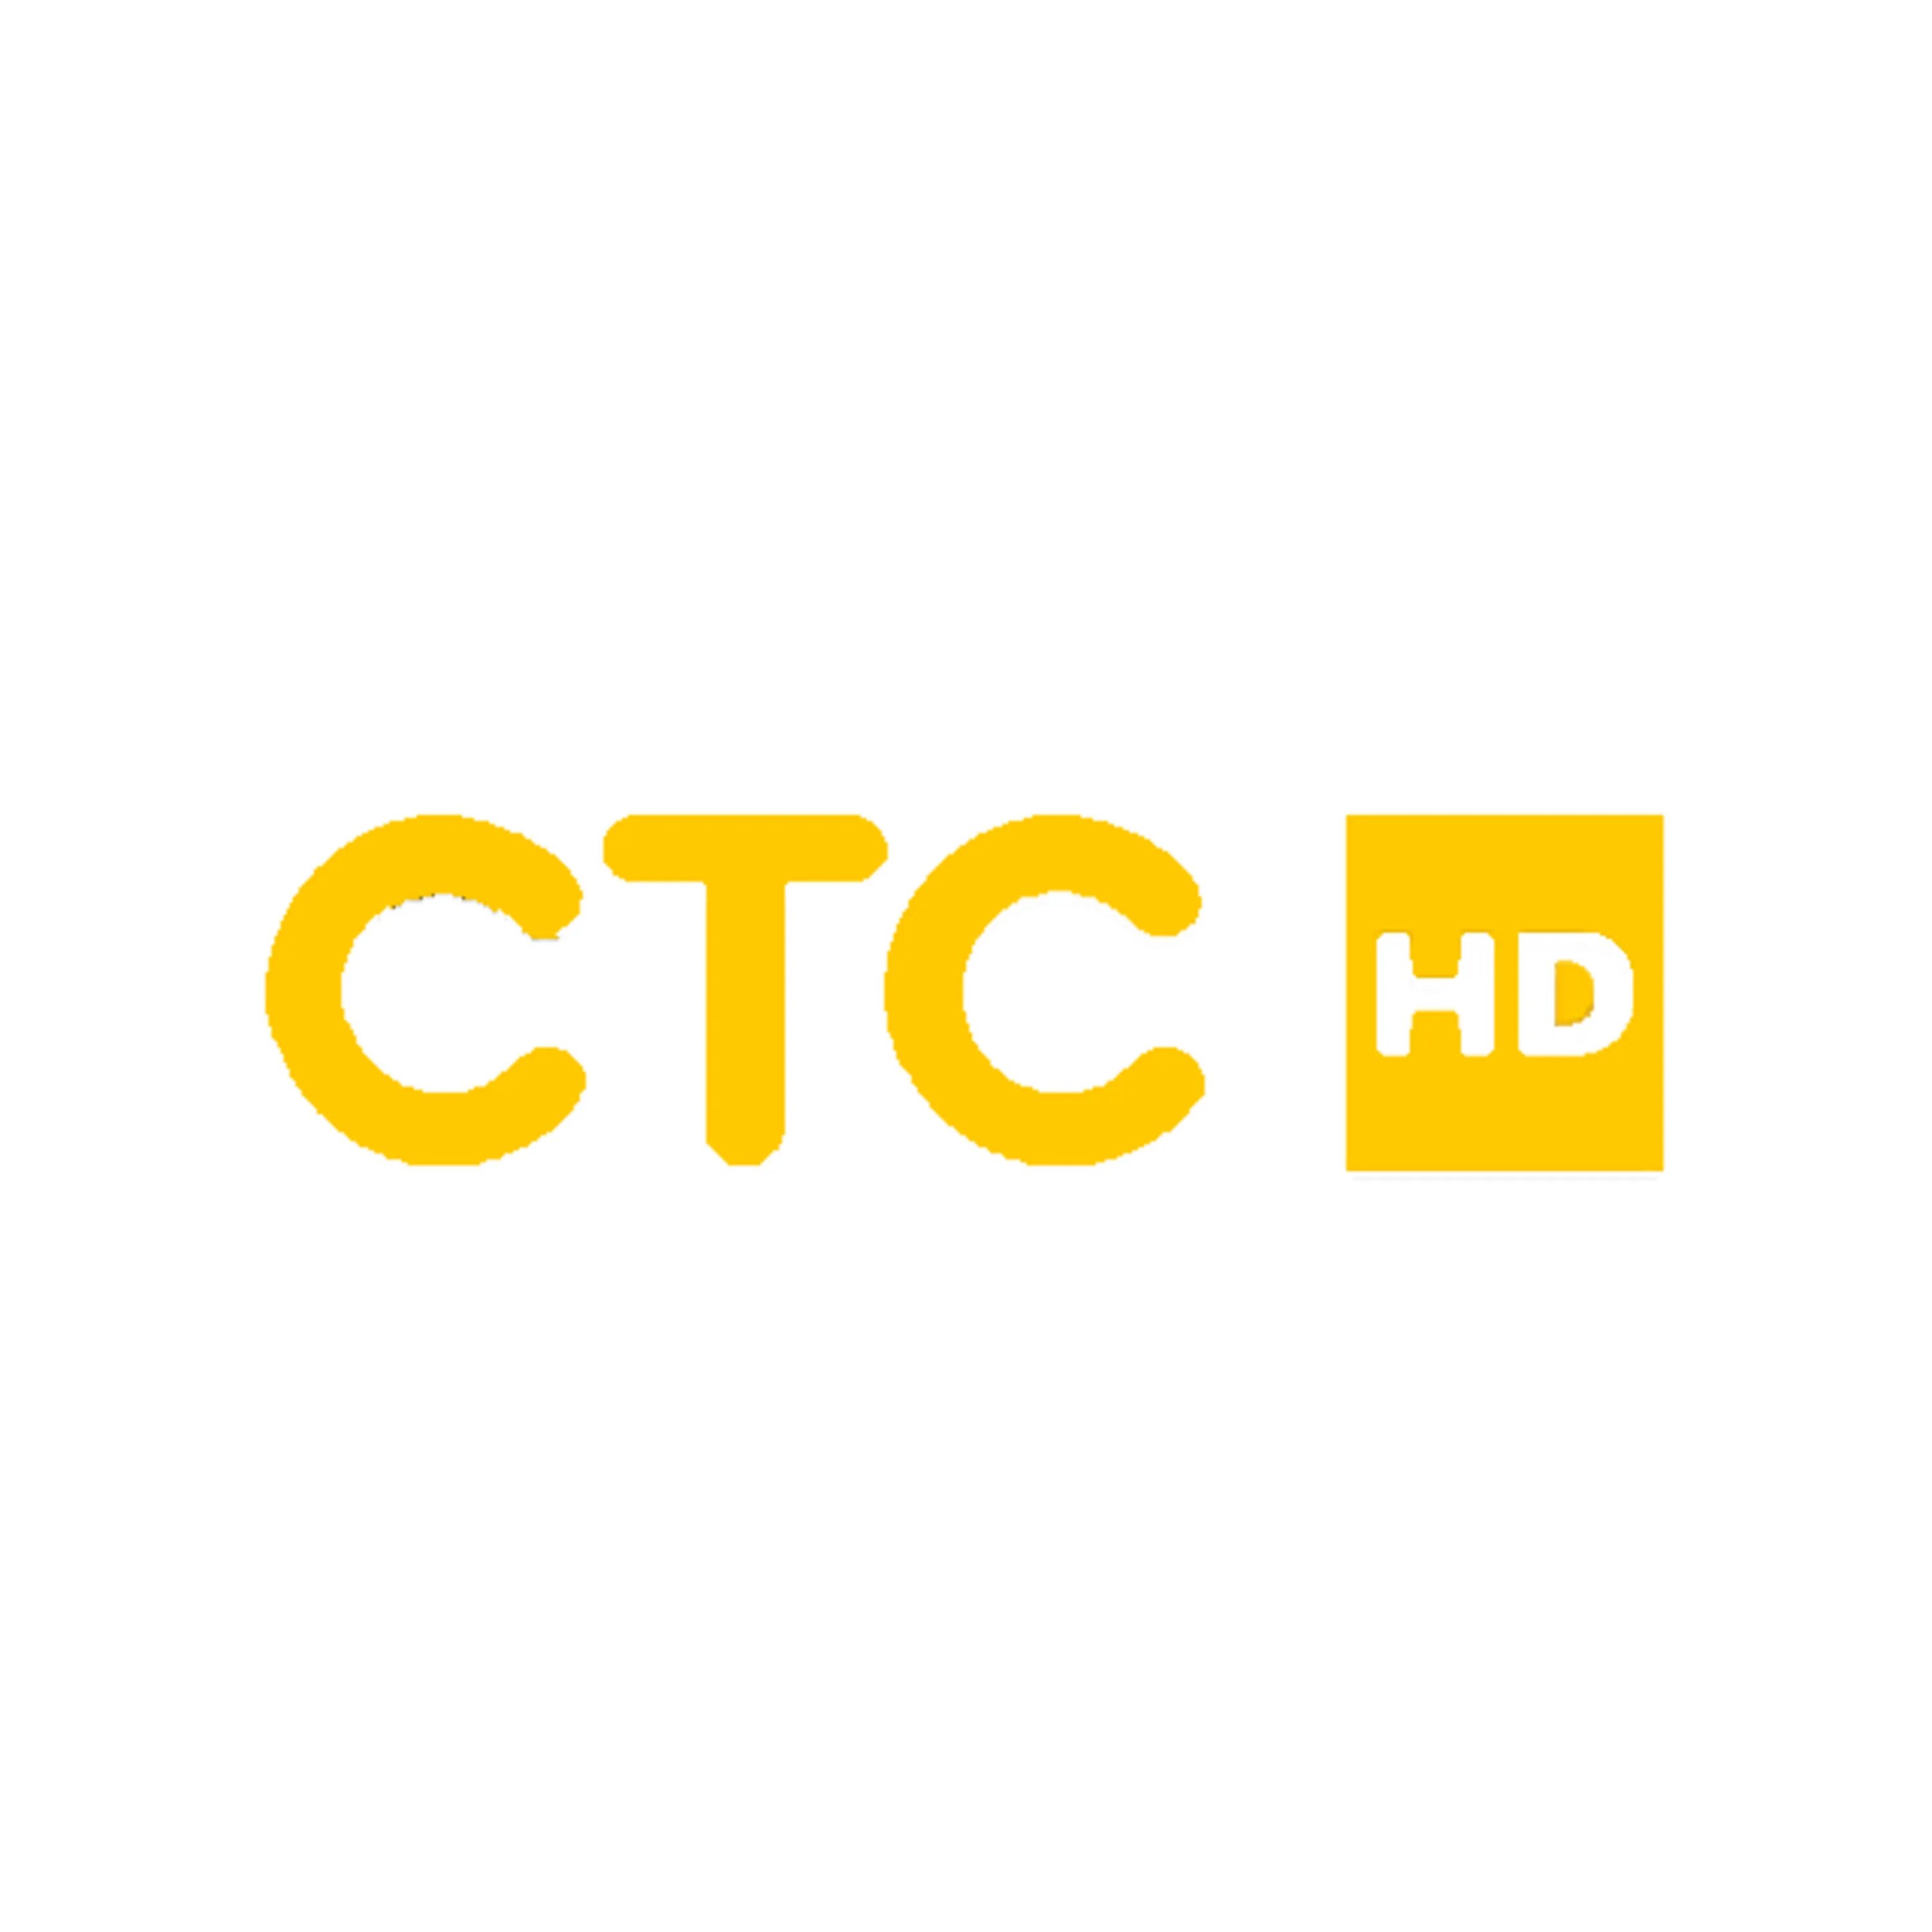 Логотип канала СТС. Ntktrfyfk CNC kjujnbg. СТС логотип 2021. Золотой канал телеканал